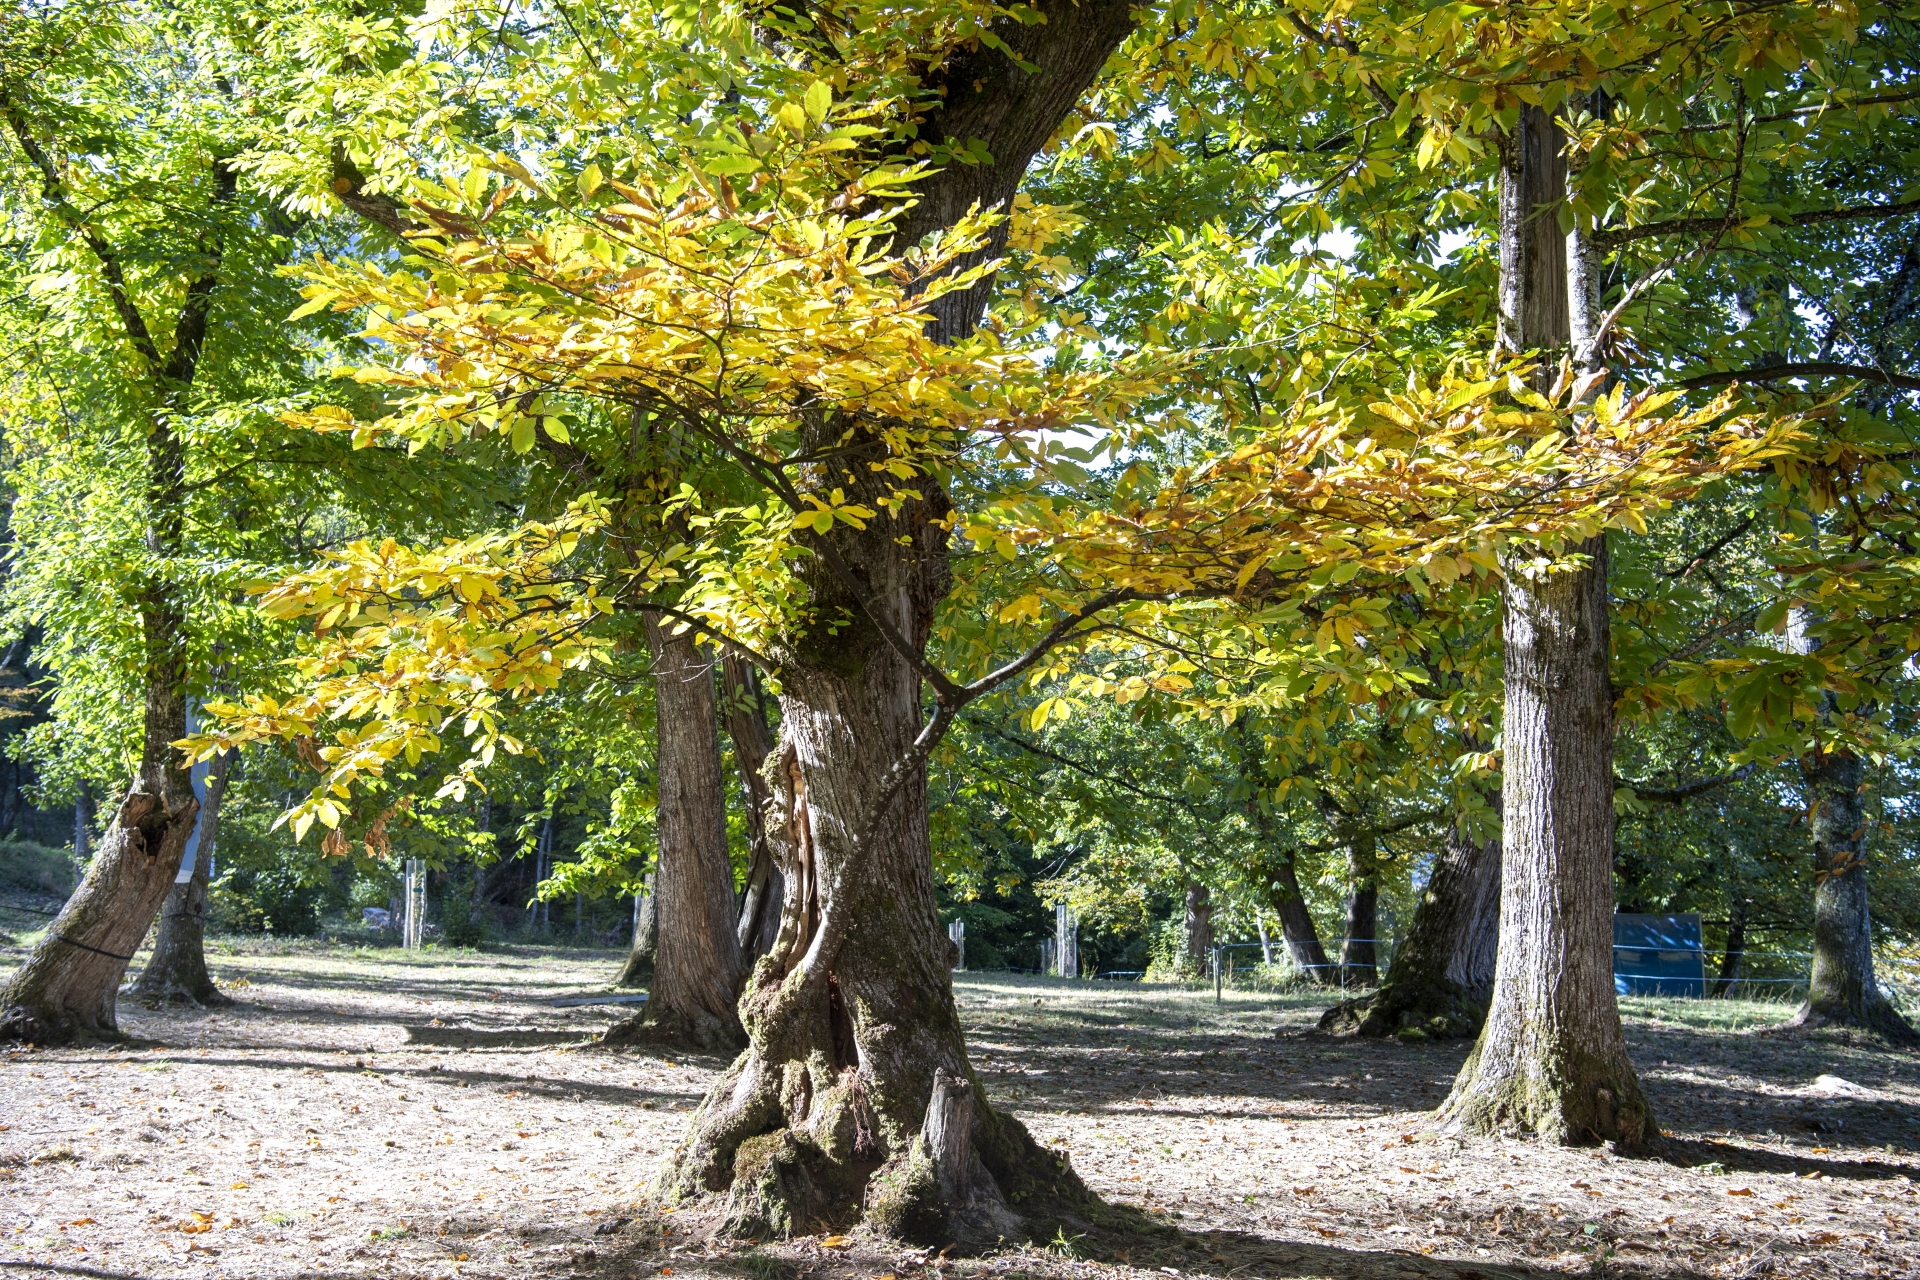 Certains arbres ont 300 ou 400 ans, voire plus. A chaque saison, la châtaigneraie offre un décor différent: «On ne s’en lasse jamais», affirme Micheline Grept Rigaud.